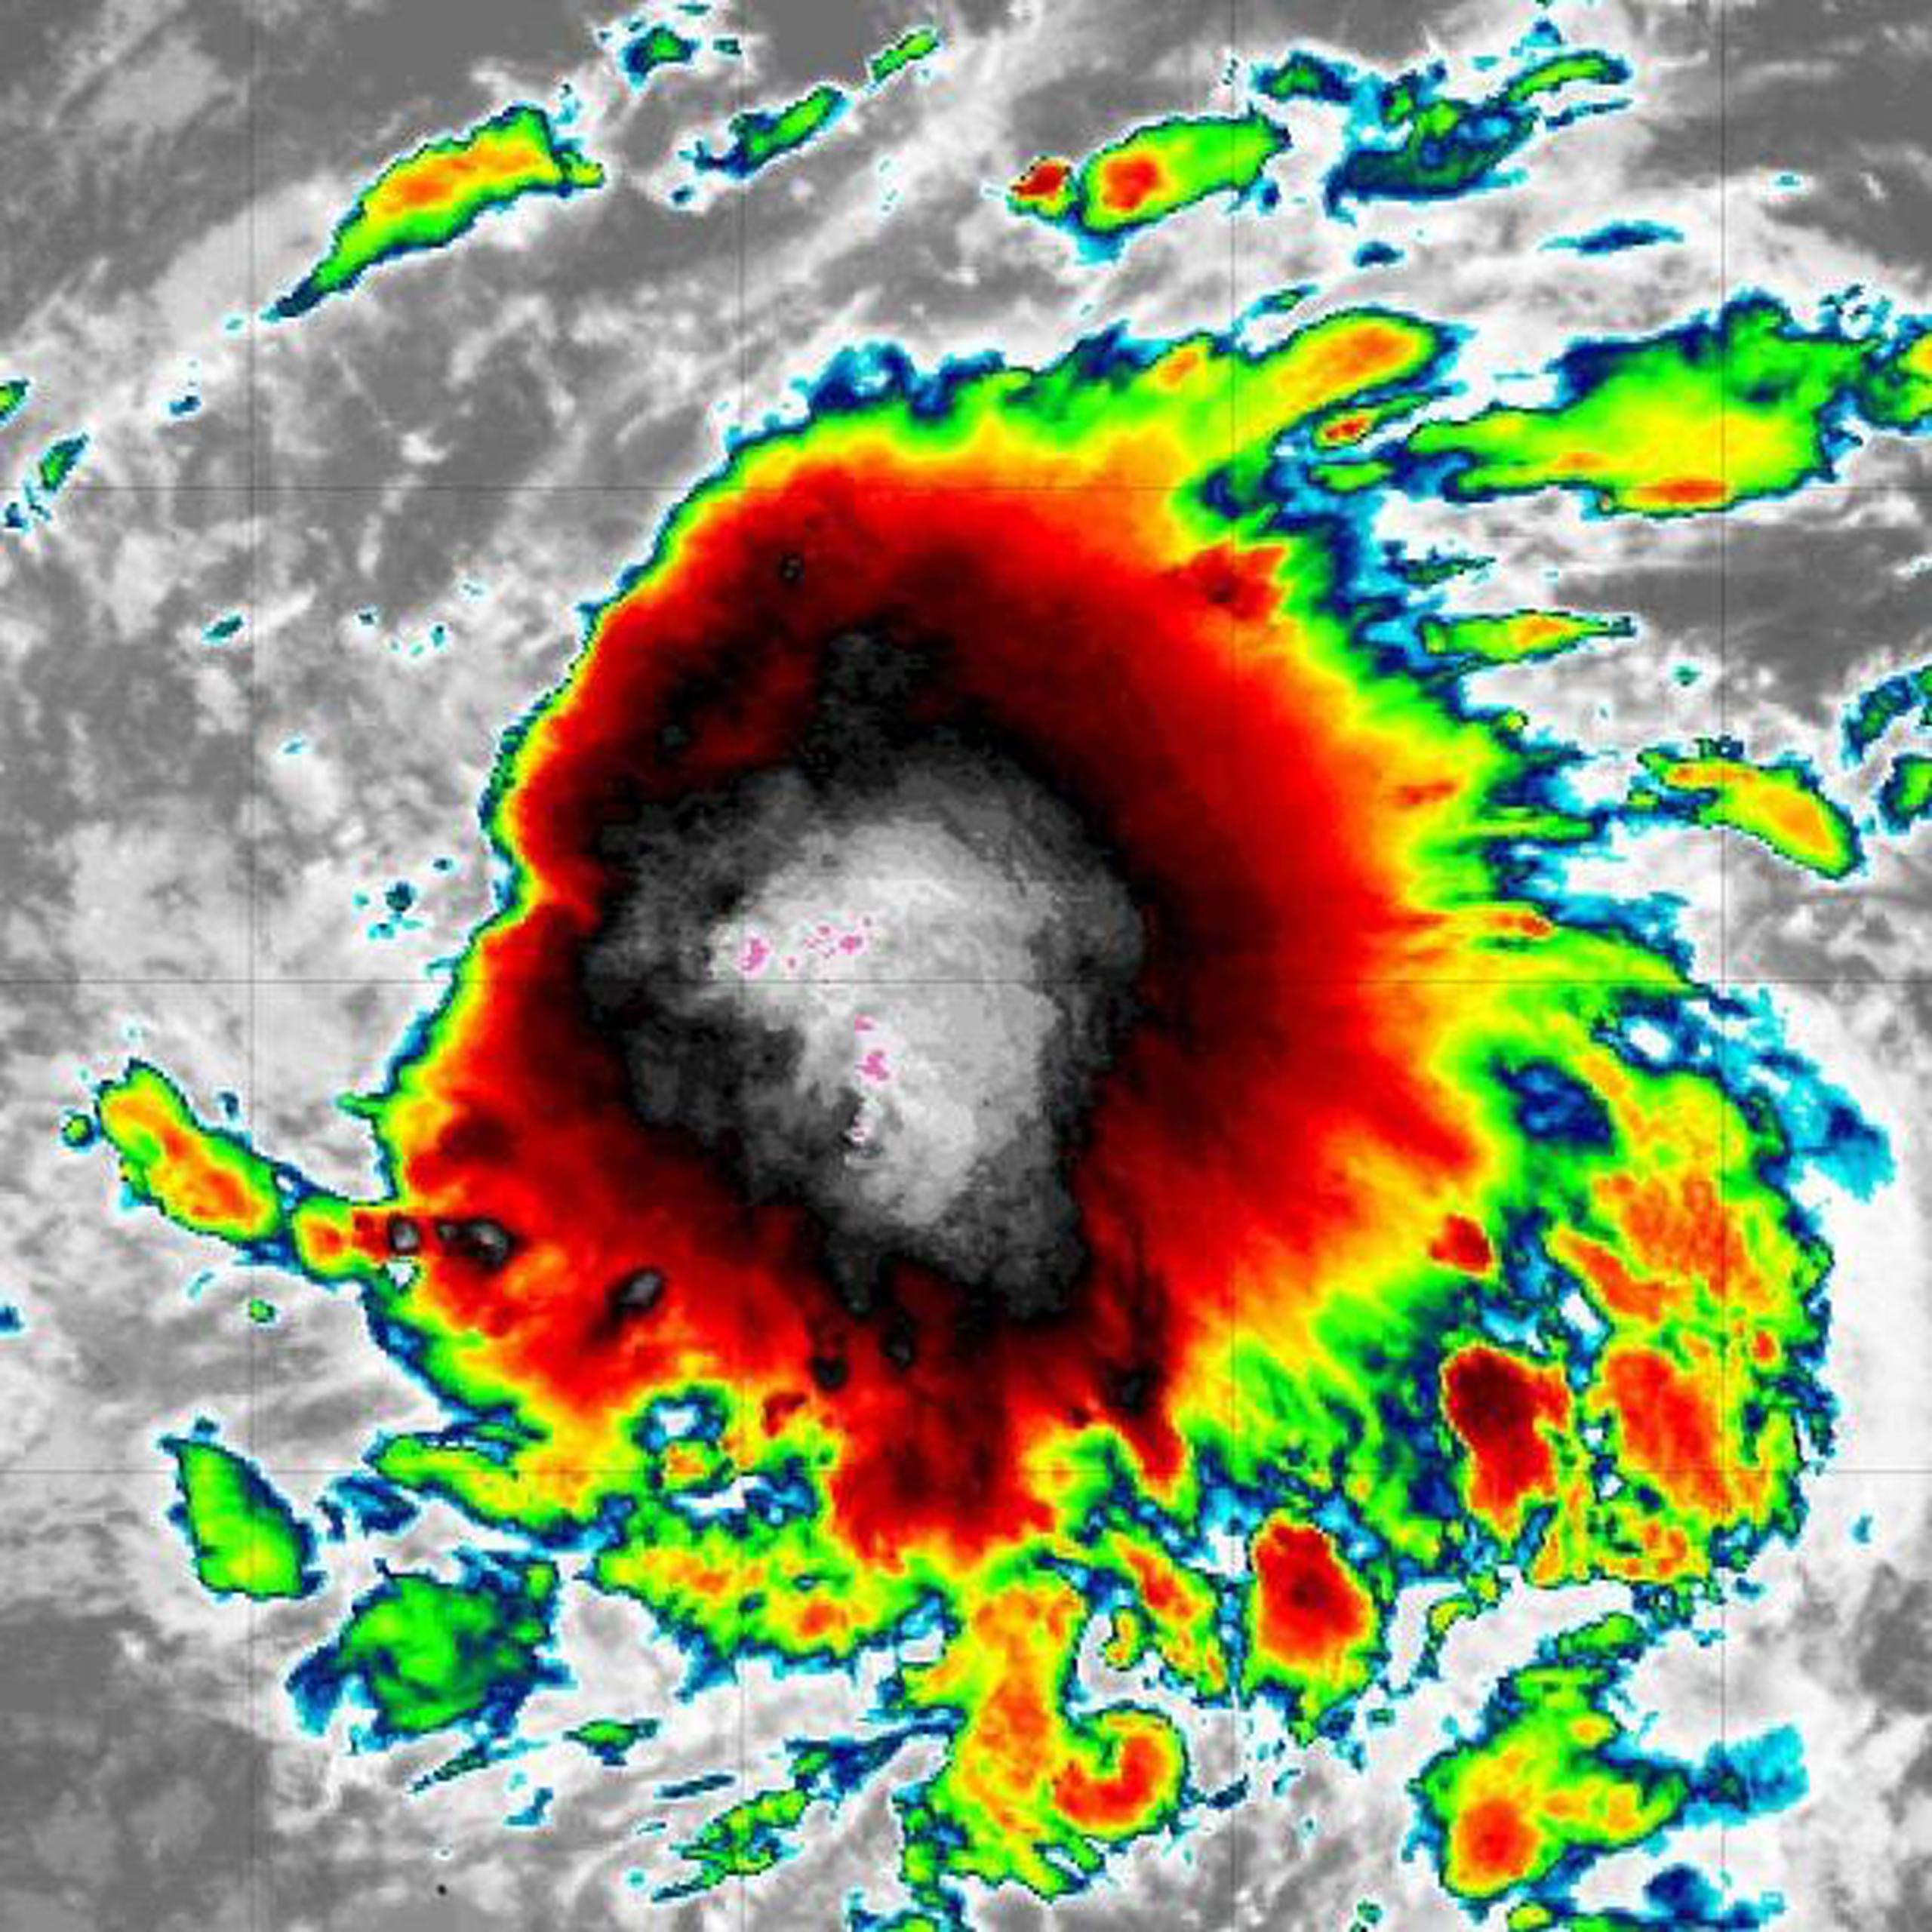 Imagen de satélite de la tormenta tropical Raymond. (Administración Nacional Oceánica y Atmosférica)